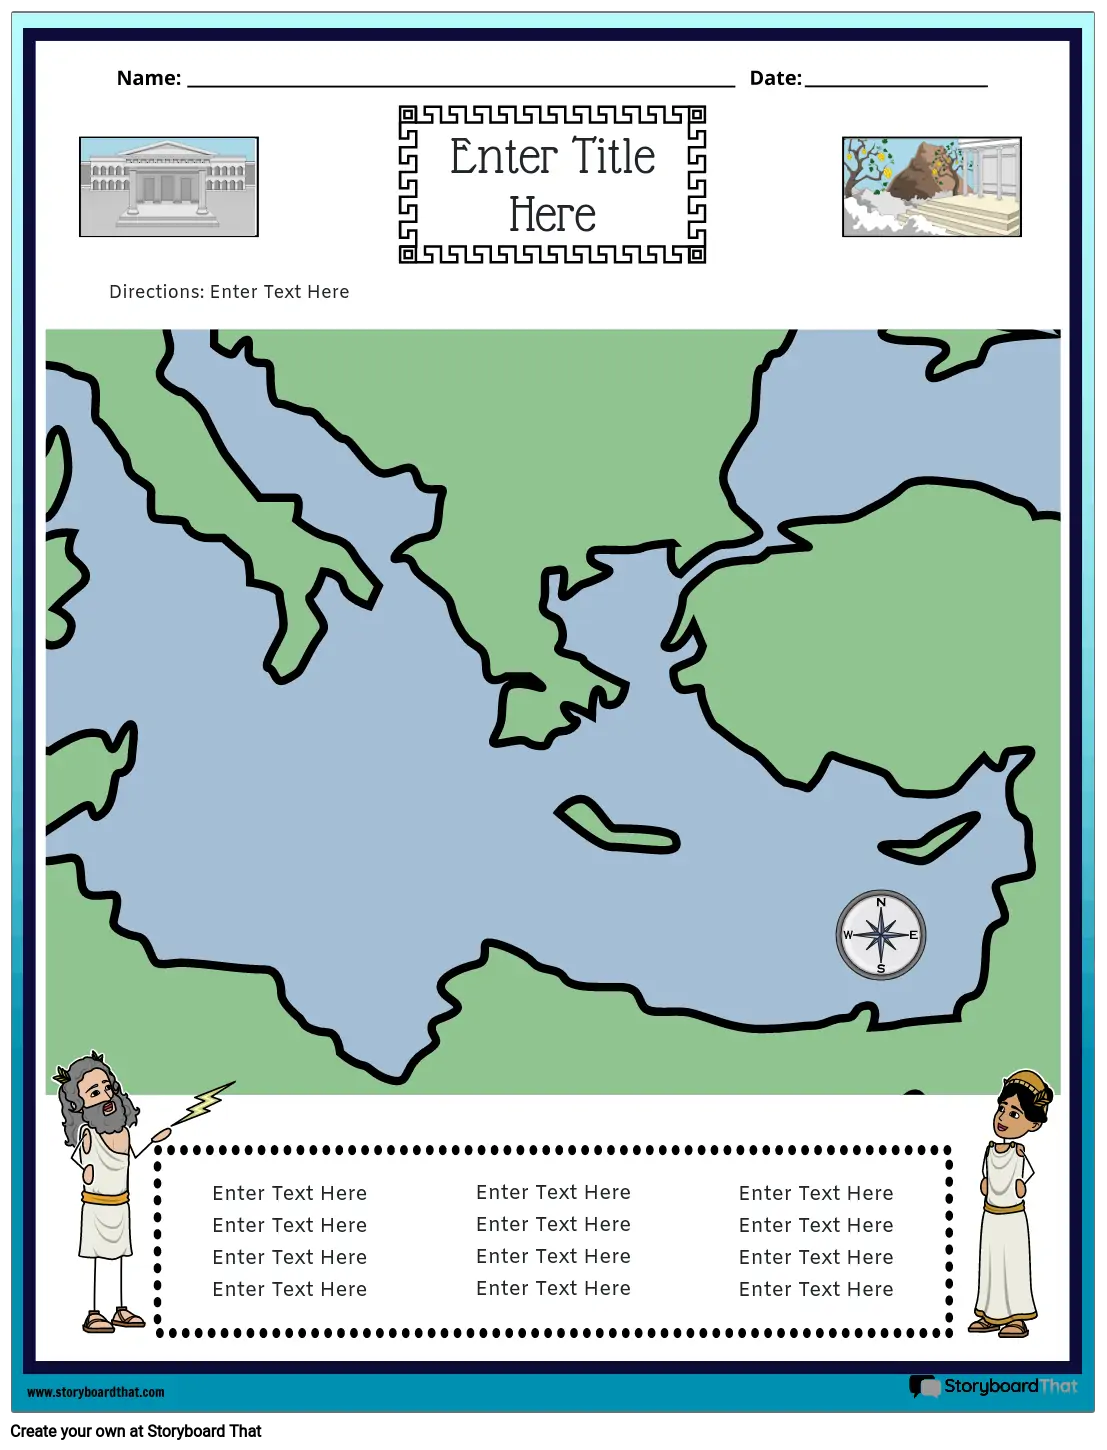 Carte de la Grèce Antique